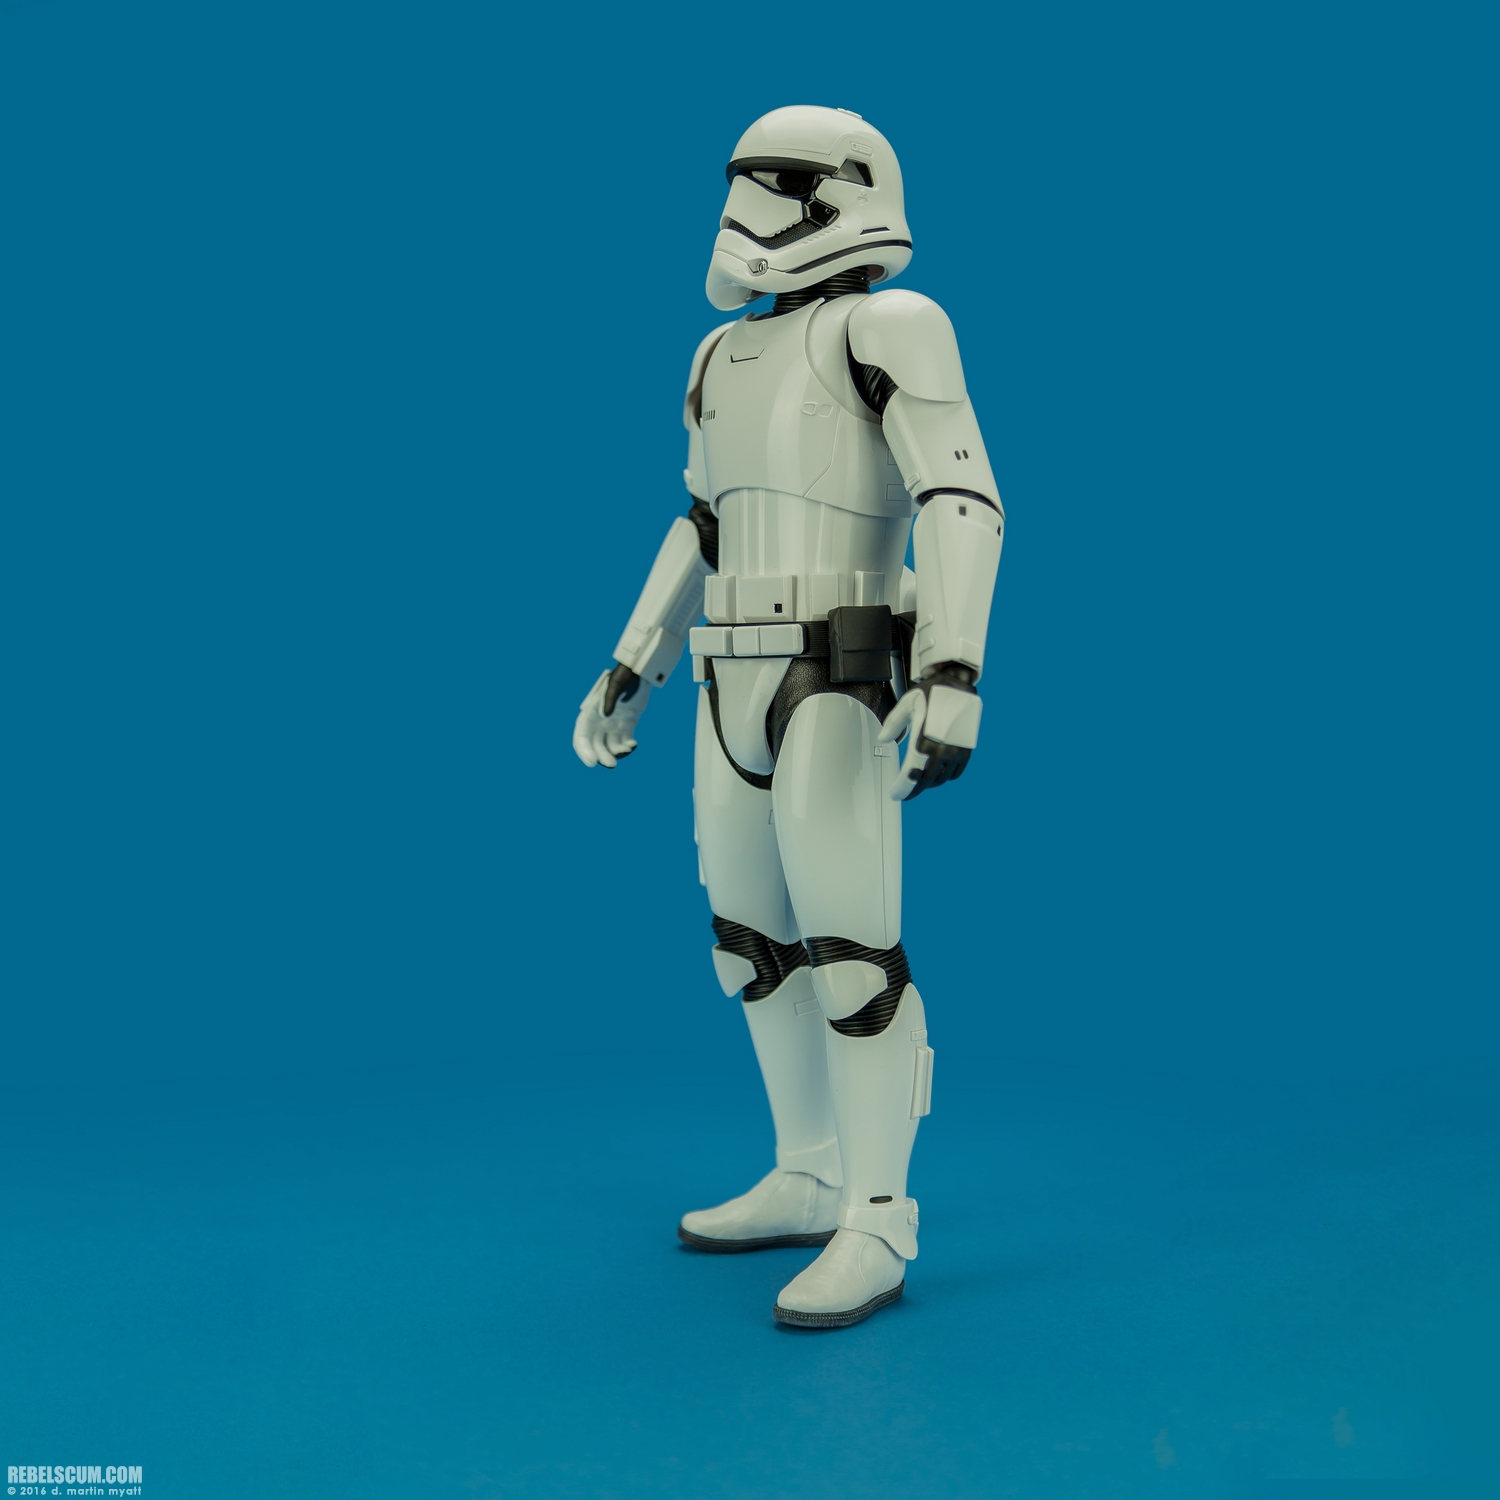 MMS346-Finn-First-Order-Riot-control-Stormtrooper-Hot-Toys-029.jpg